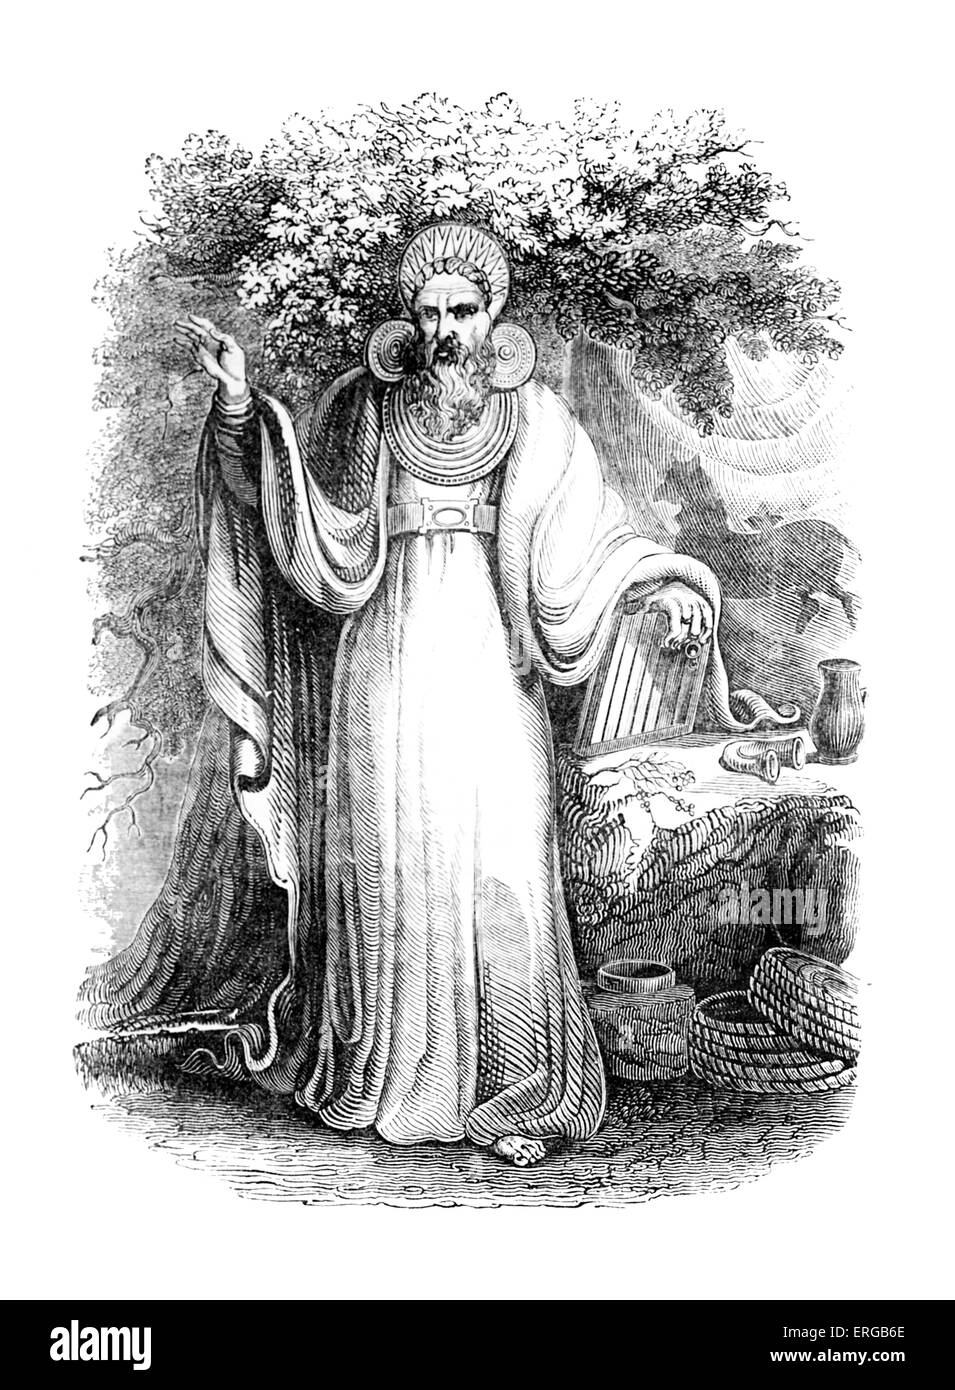 Archi-druida en su traje judicial completa. Un druida era un miembro de la clase sacerdotal en Gran Bretaña, Irlanda, y en la Galia, durante el Foto de stock